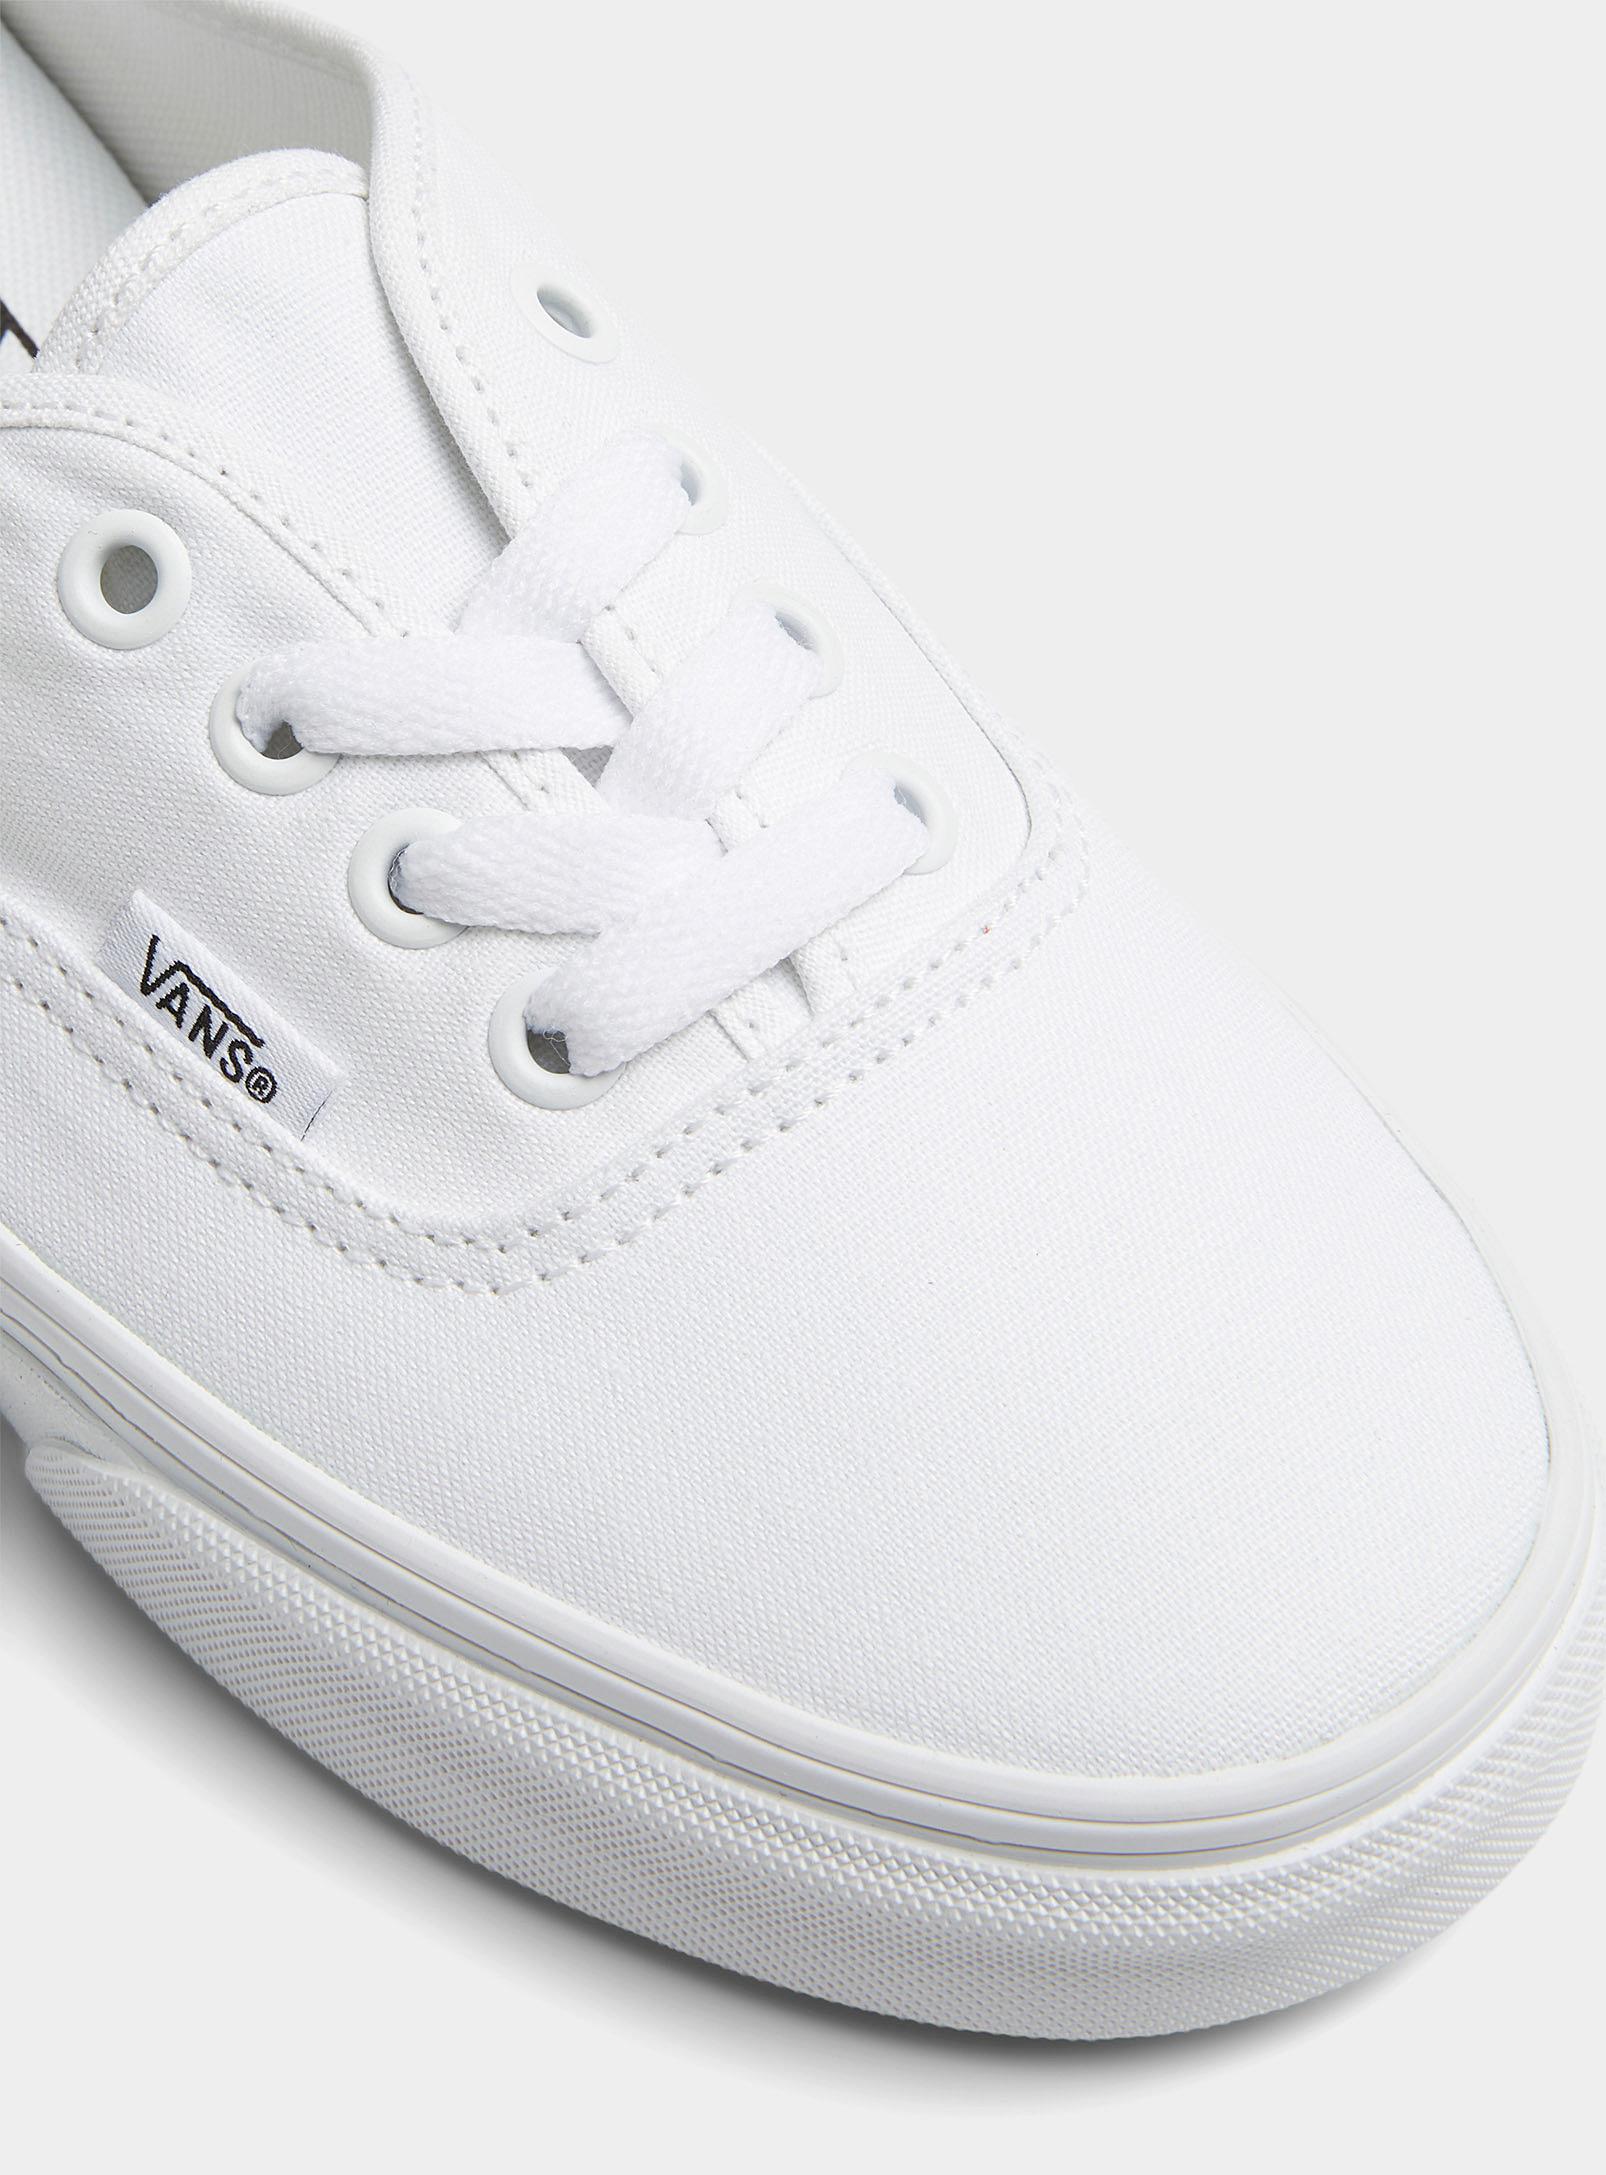 Vans Authentic Mule Sneakers Women in White | Lyst